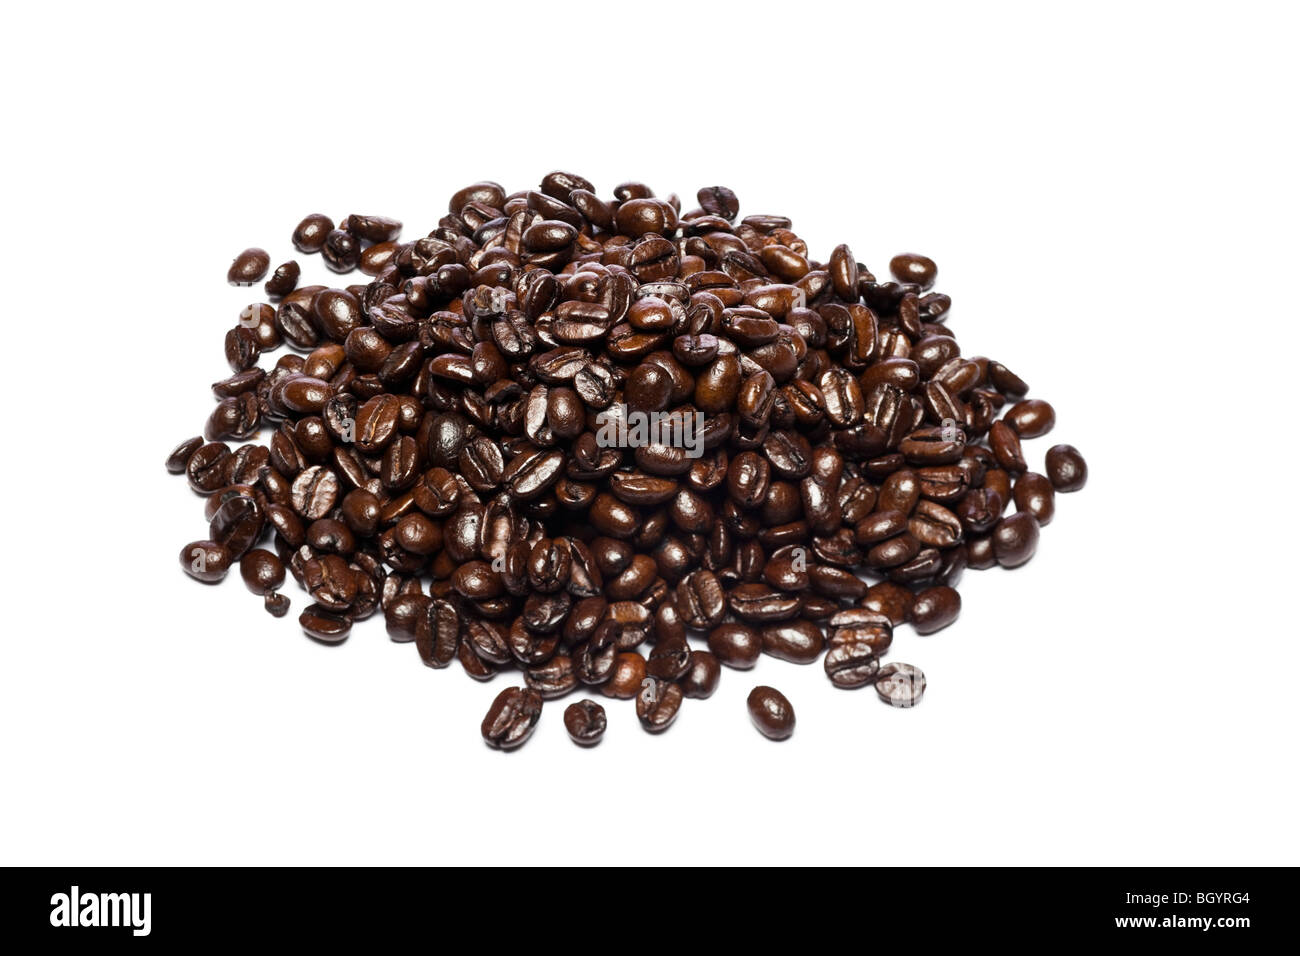 Coffee beans pile, studio on white background Stock Photo